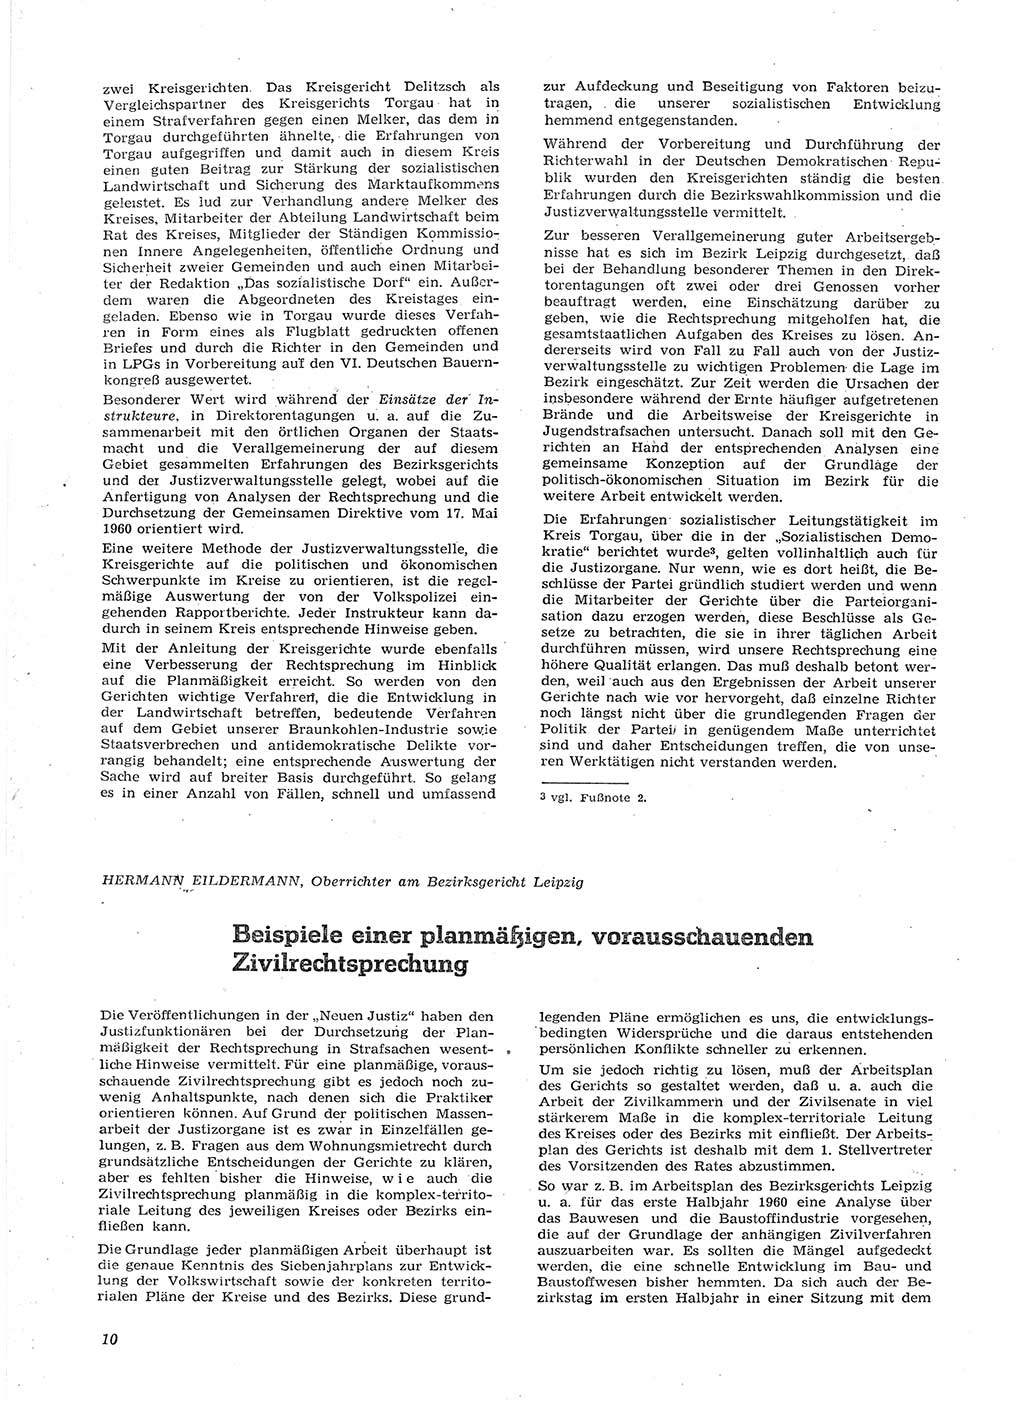 Neue Justiz (NJ), Zeitschrift für Recht und Rechtswissenschaft [Deutsche Demokratische Republik (DDR)], 15. Jahrgang 1961, Seite 10 (NJ DDR 1961, S. 10)